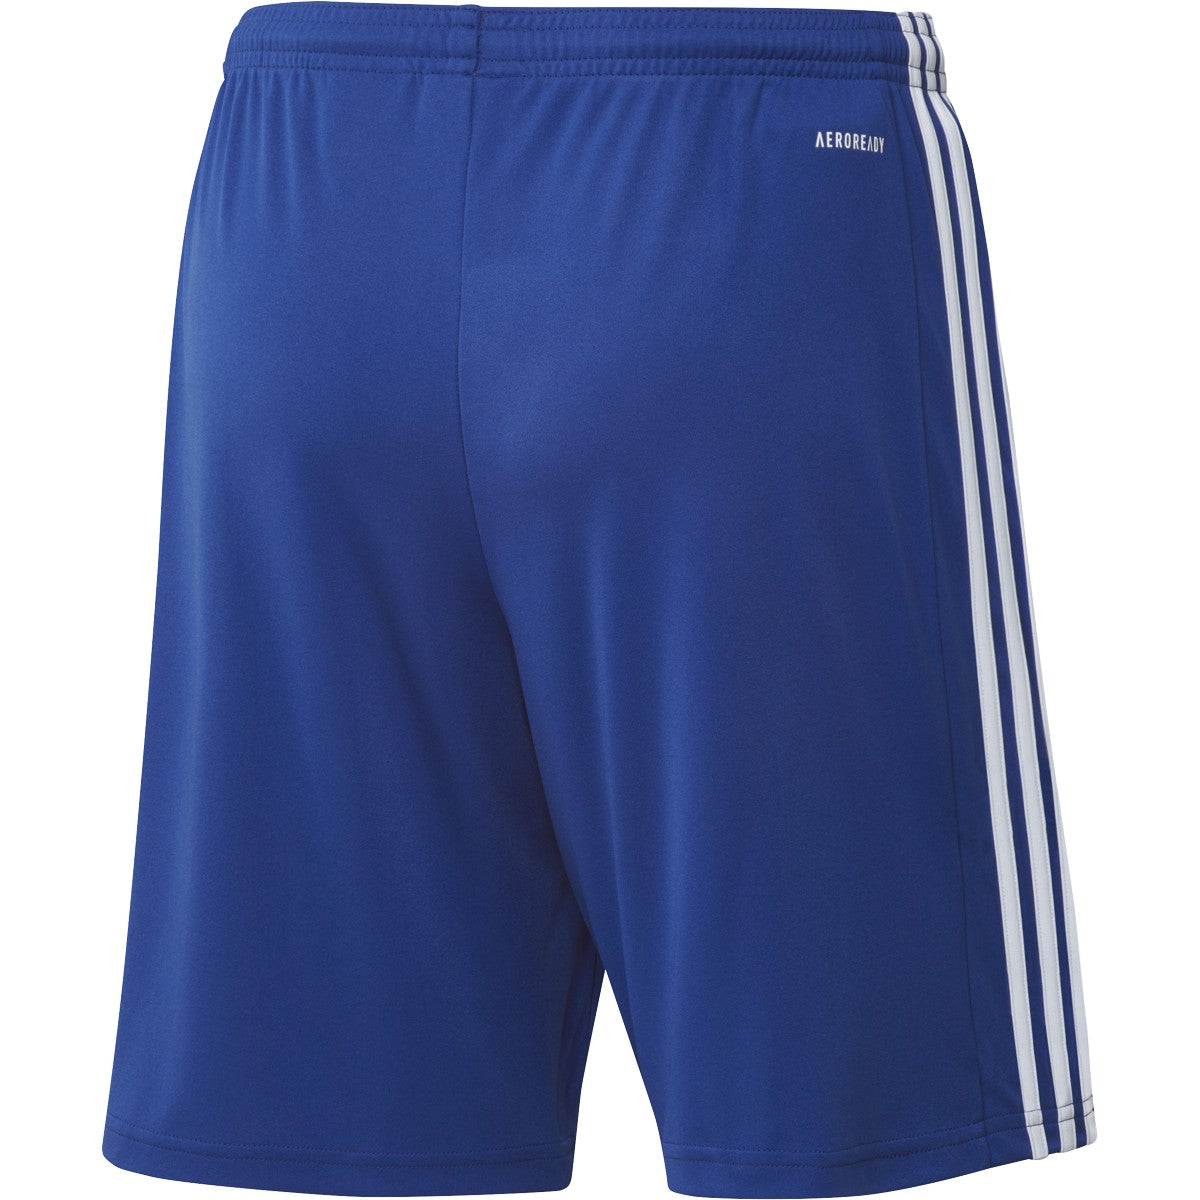 Adidas Squadra 21 Shorts- Royal/White